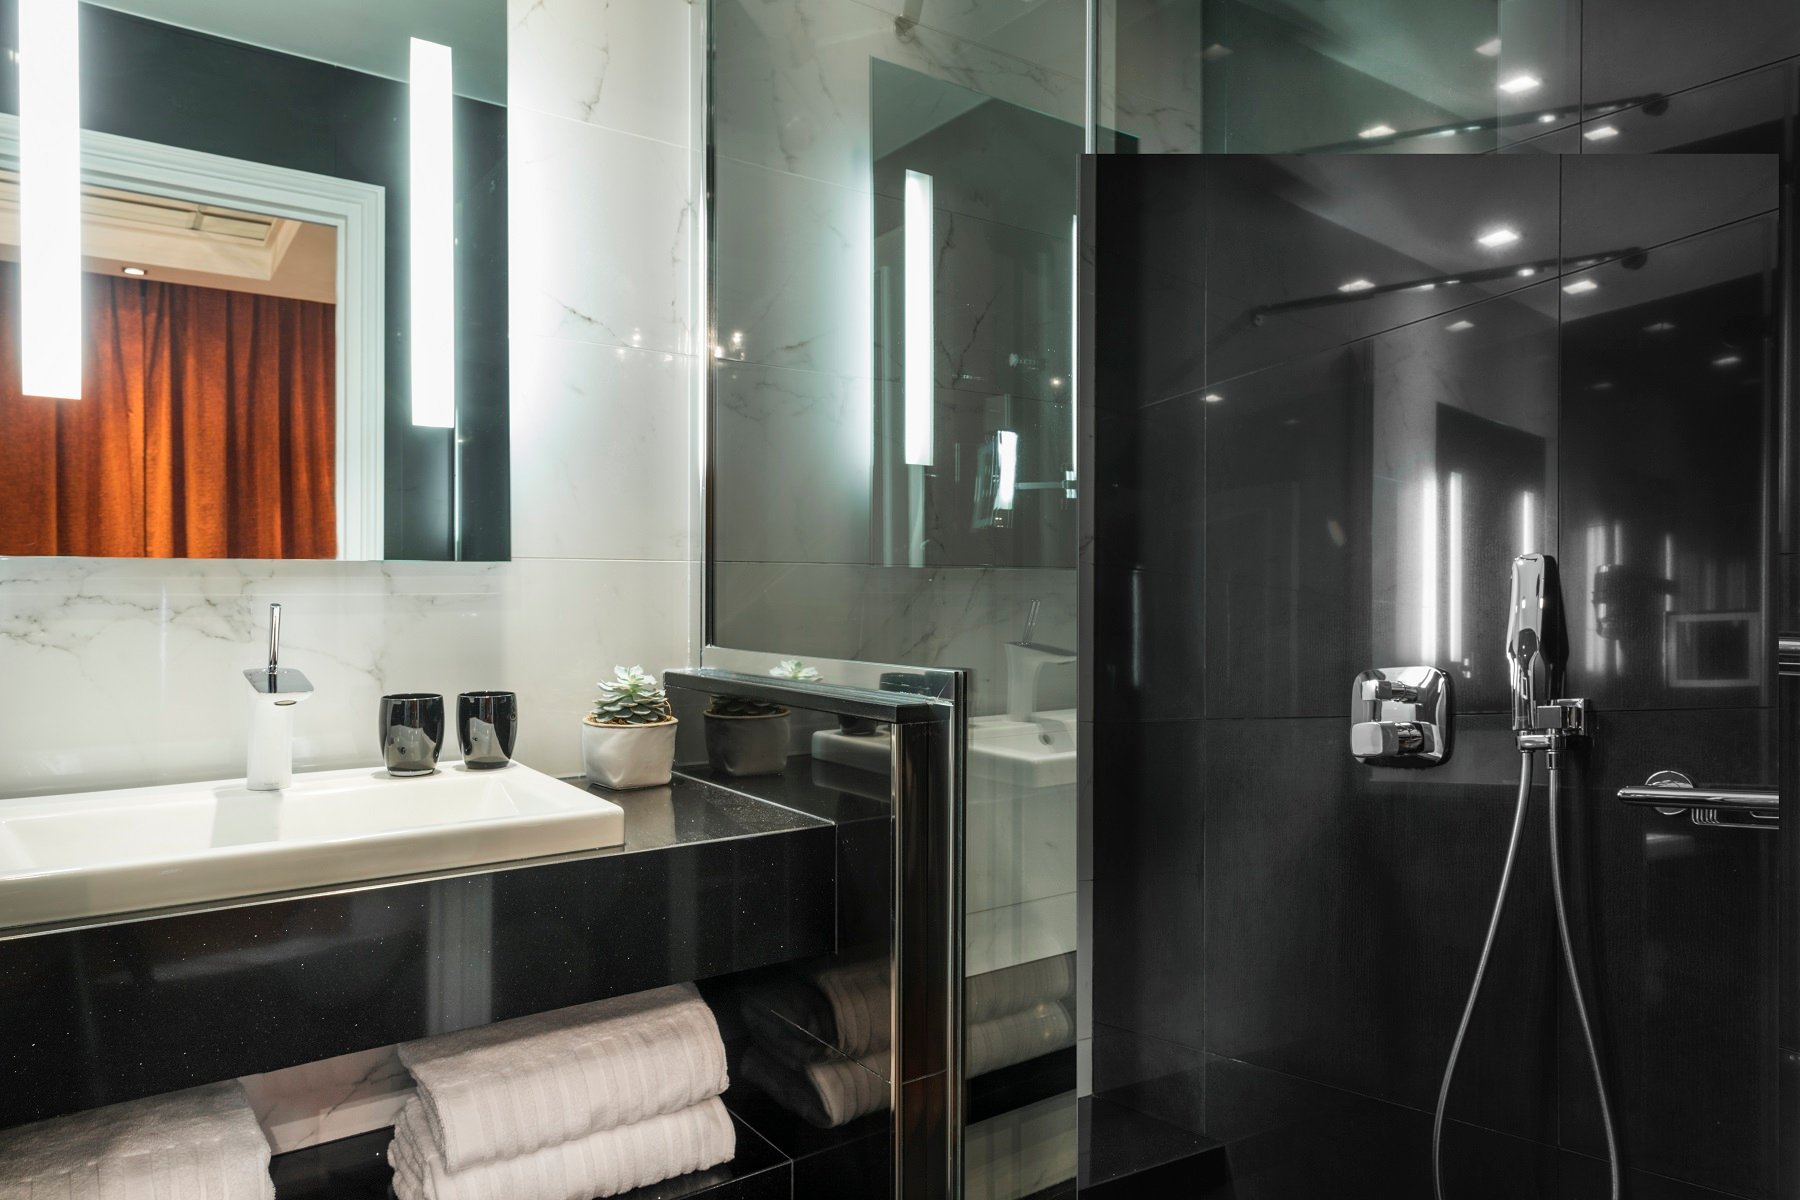 Maison Albar Hotels Le Champs-Elysées salle de bain chambre exécutive